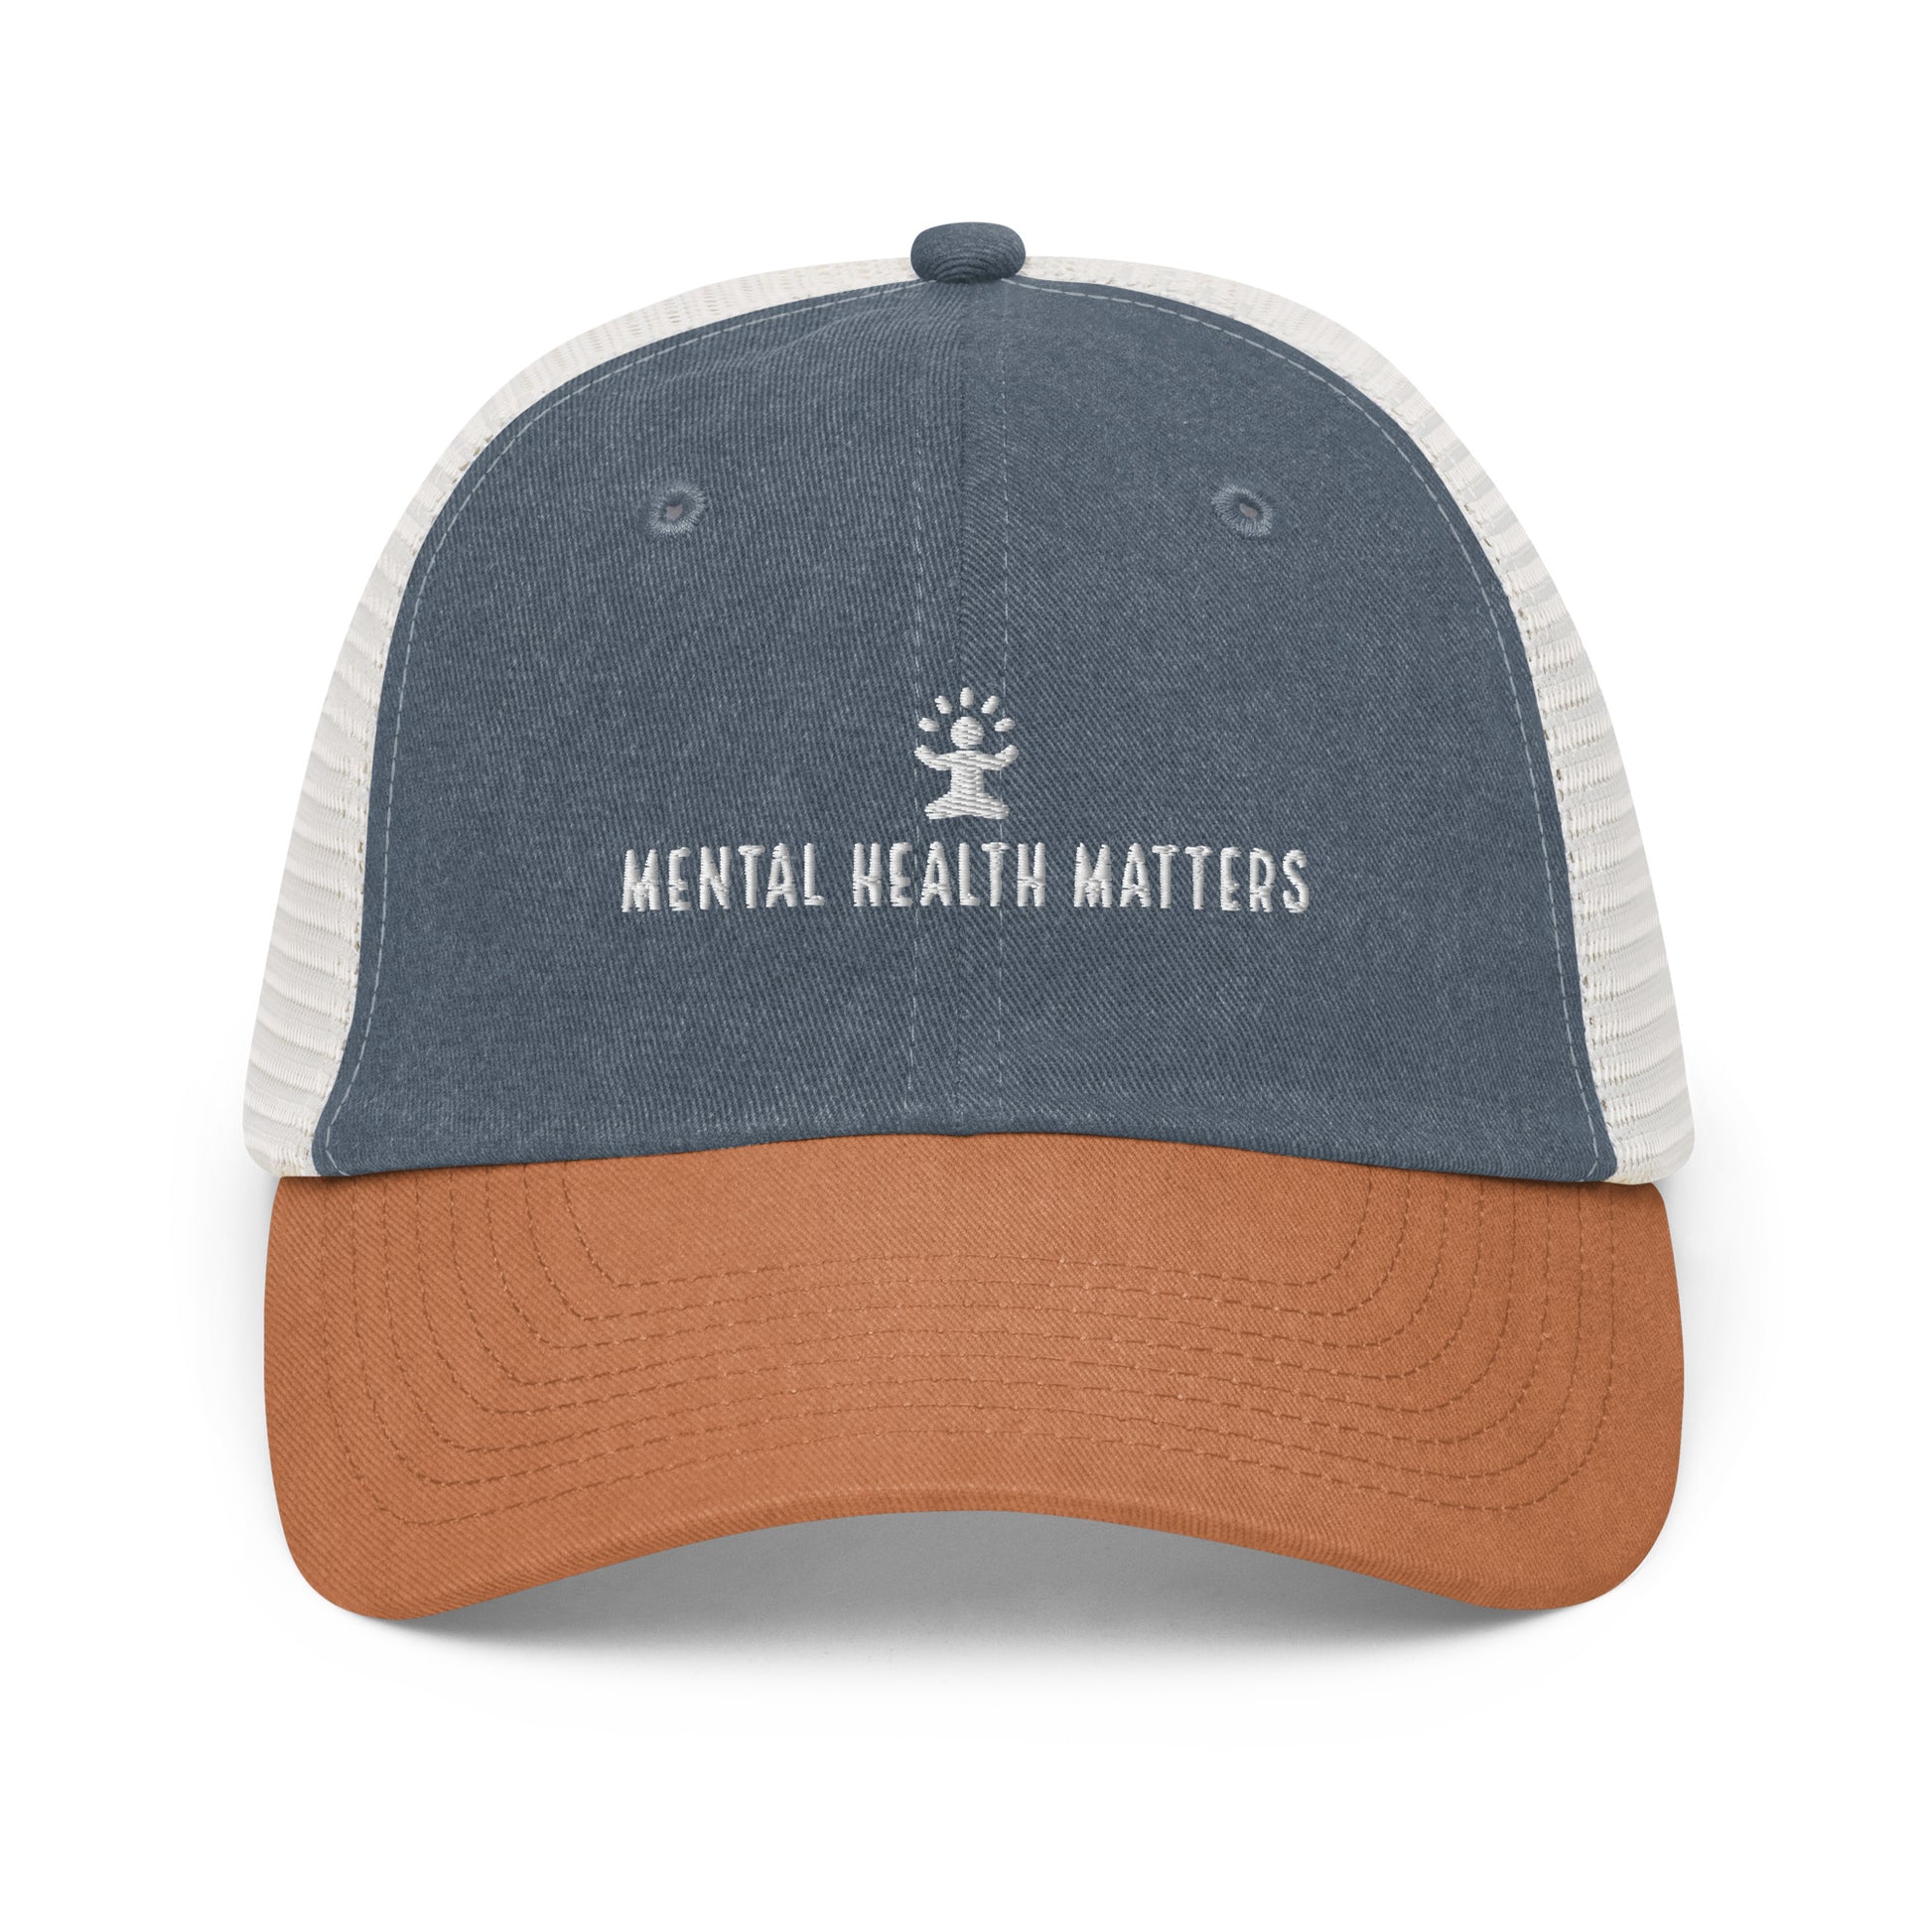 Mentals Matter Hat - Orange Front